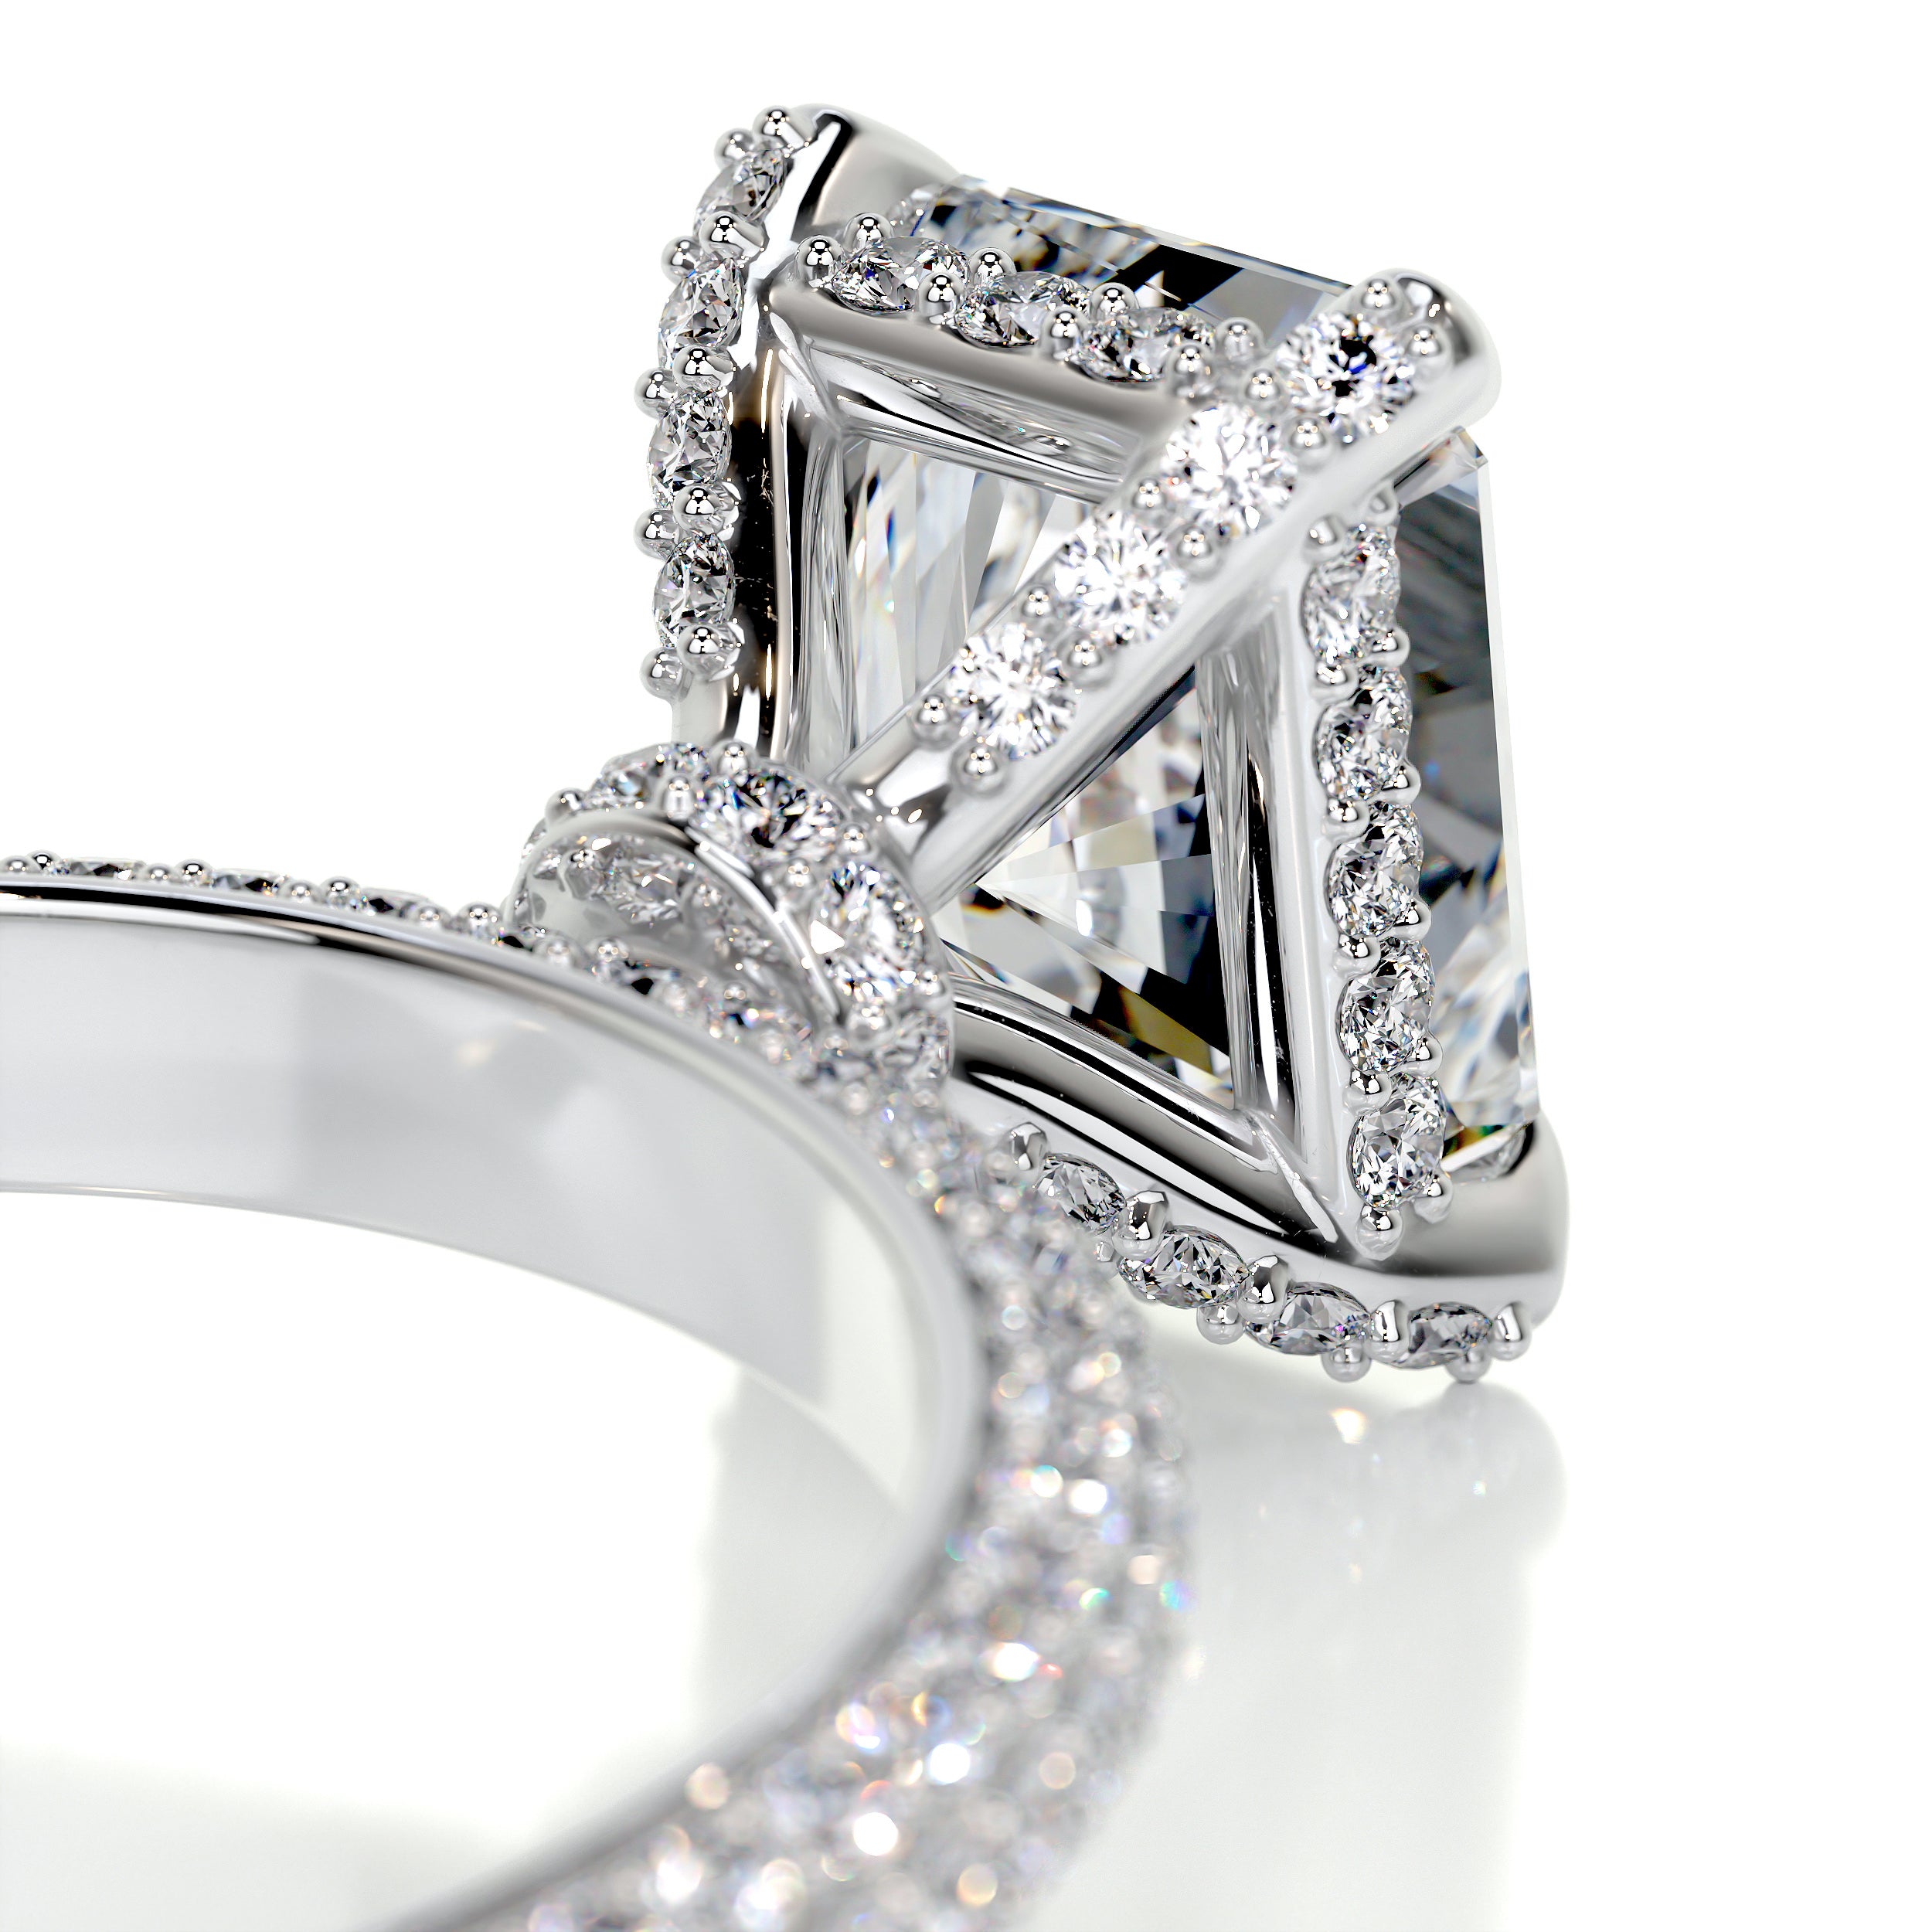 Milly Diamond Engagement Ring   (2.25 Carat) -14K White Gold